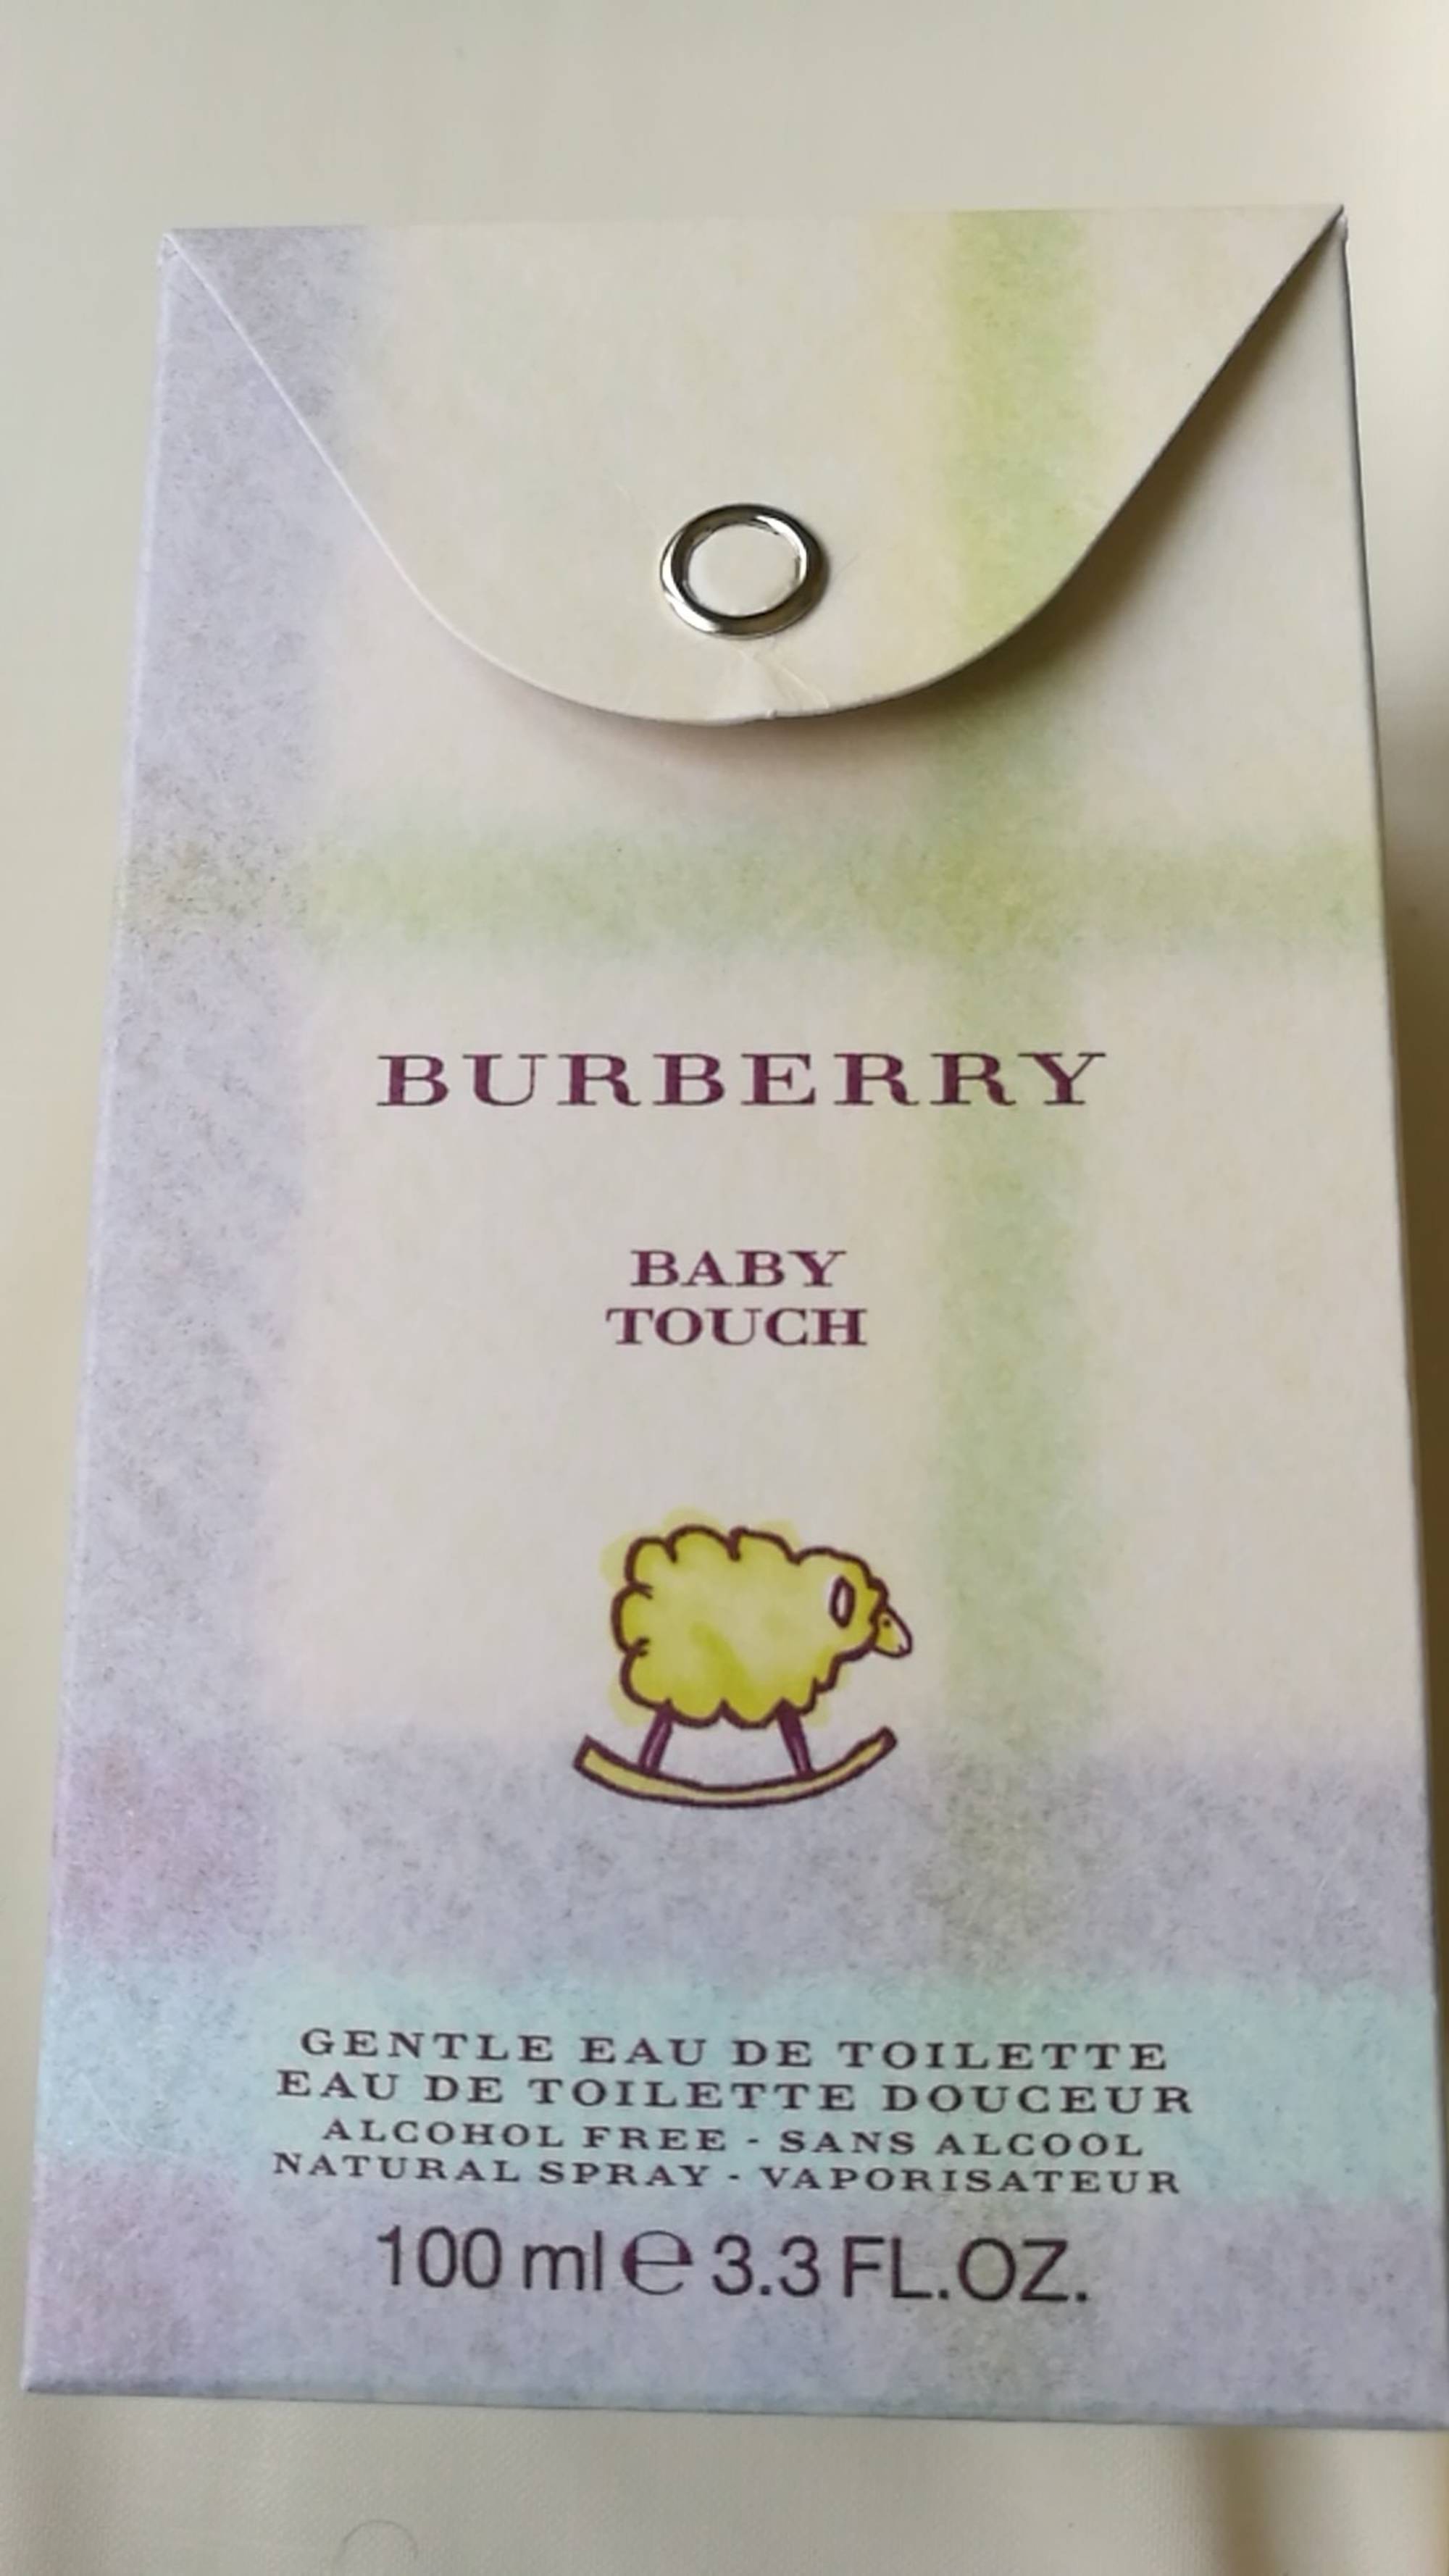 BURBERRY - Baby touch - Eau de toilette douceur 